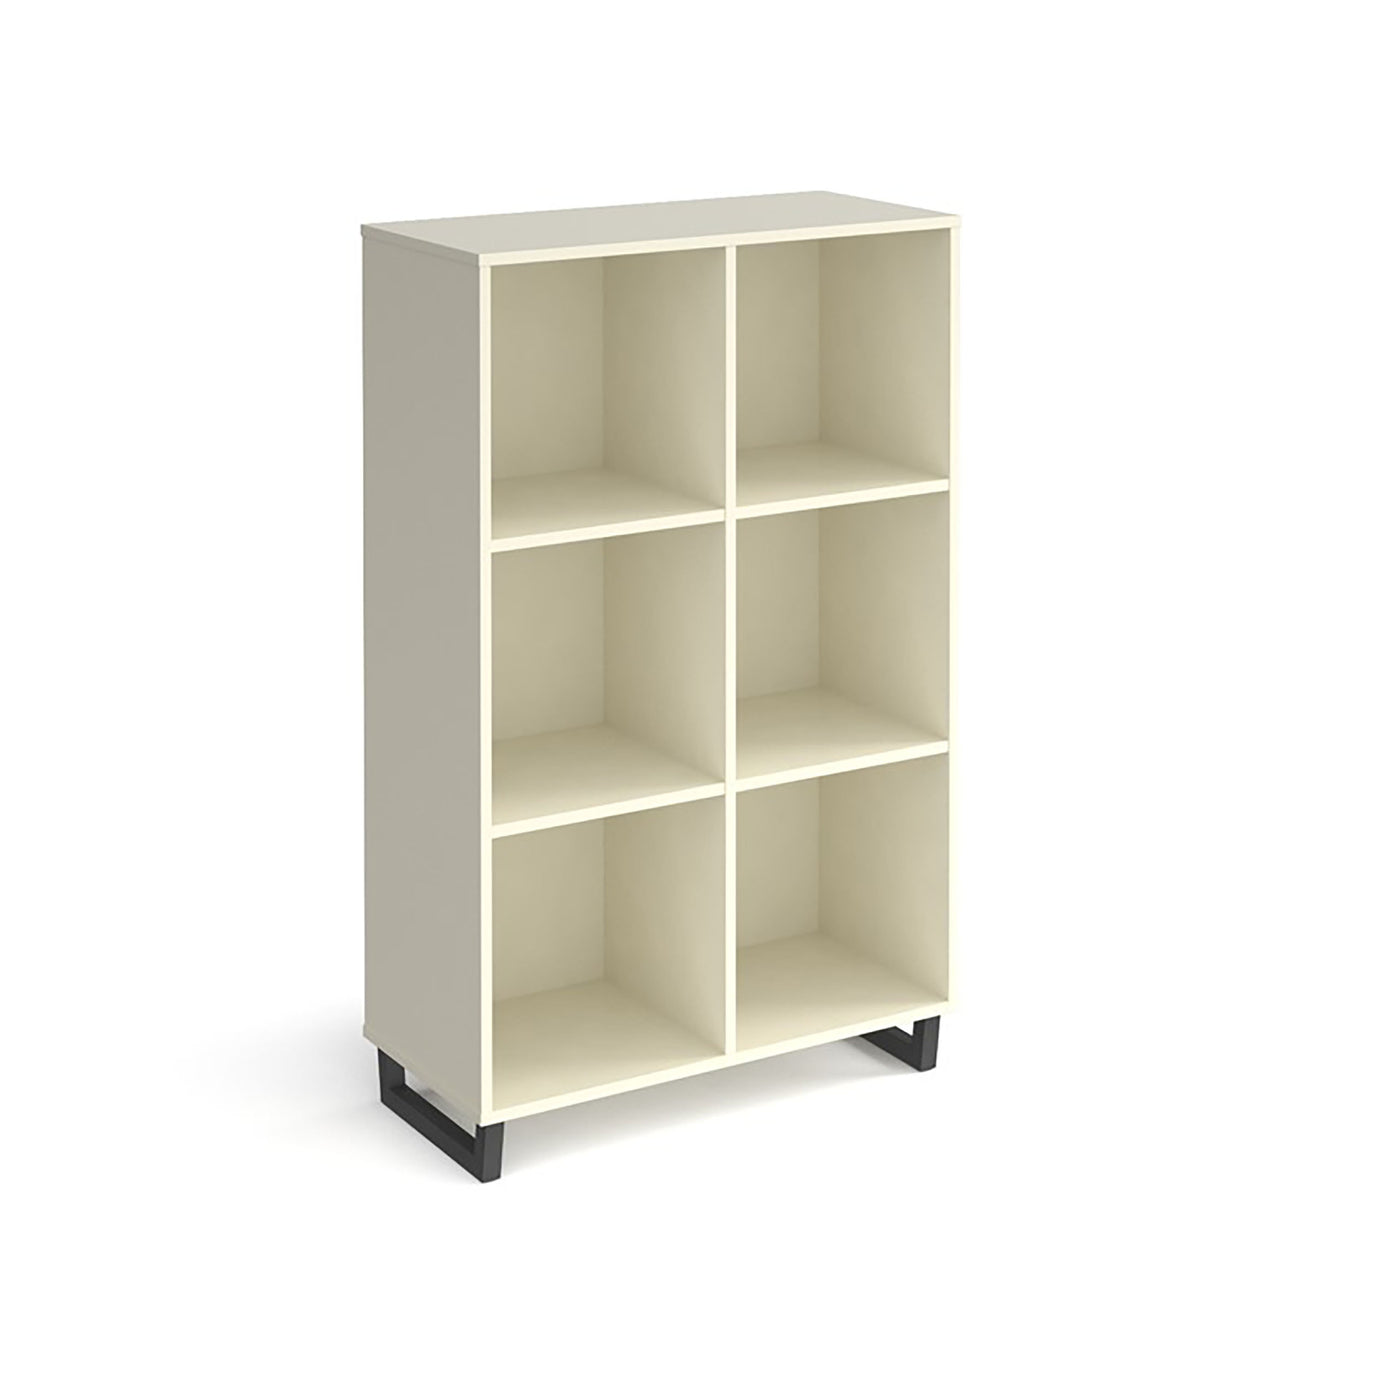 Sparta Storage Unit | Home Office Storage | Wooden Storage Shelves | Home Furnishings | Home Office Furniture